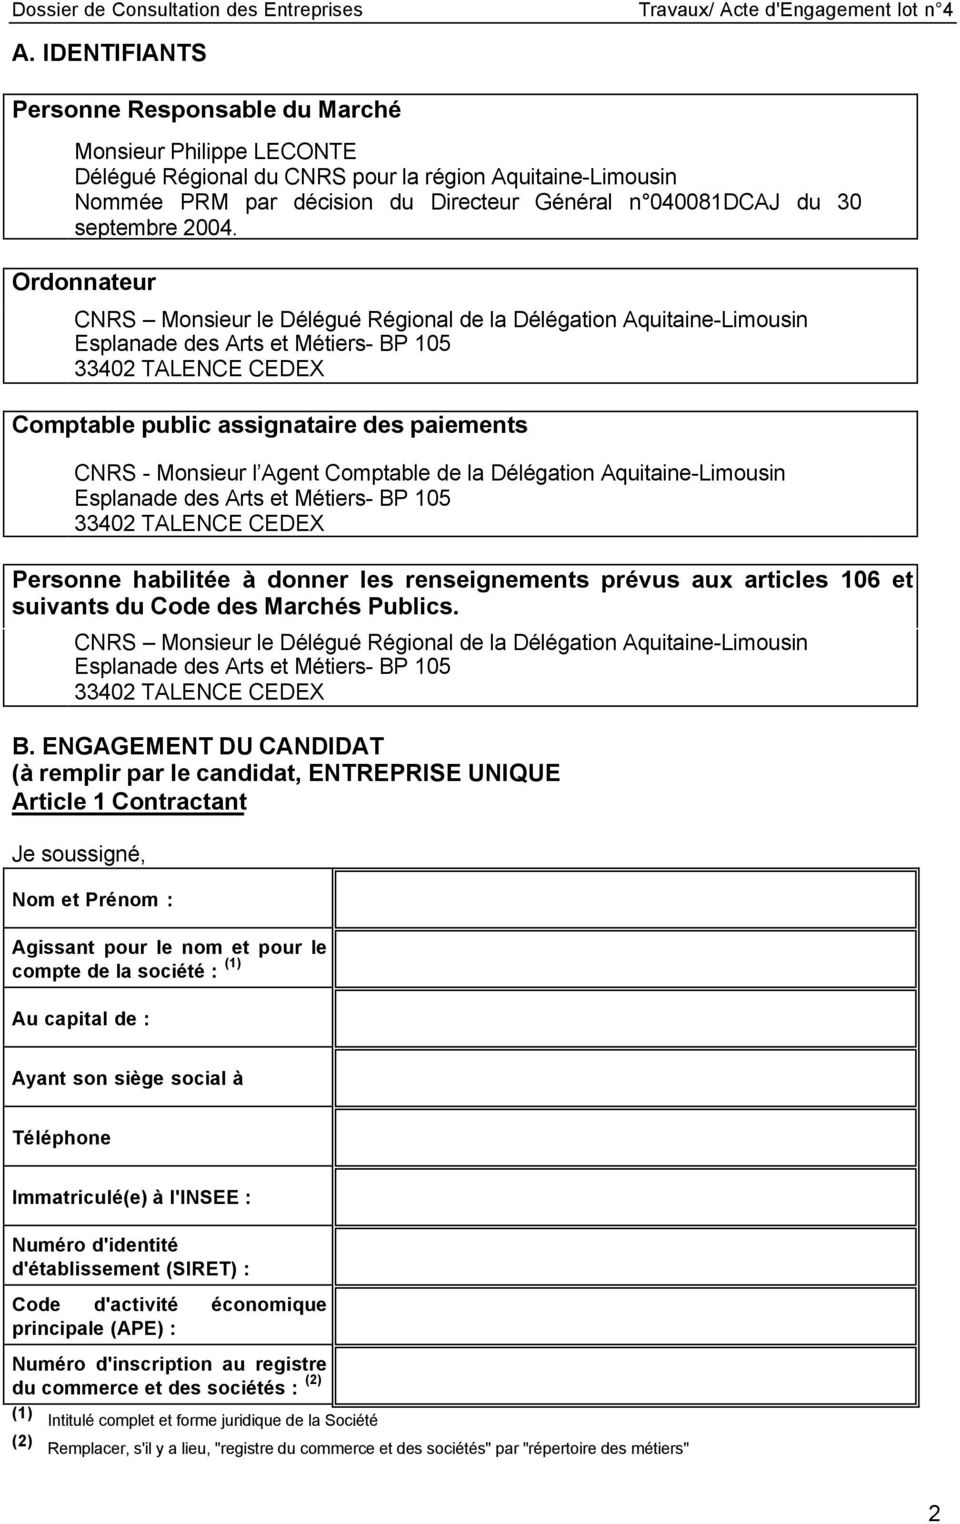 Ordonnateur CNRS Monsieur le Délégué Régional de la Délégation Aquitaine-Limousin Esplanade des Arts et Métiers- BP 105 33402 TALENCE CEDEX Comptable public assignataire des paiements CNRS - Monsieur